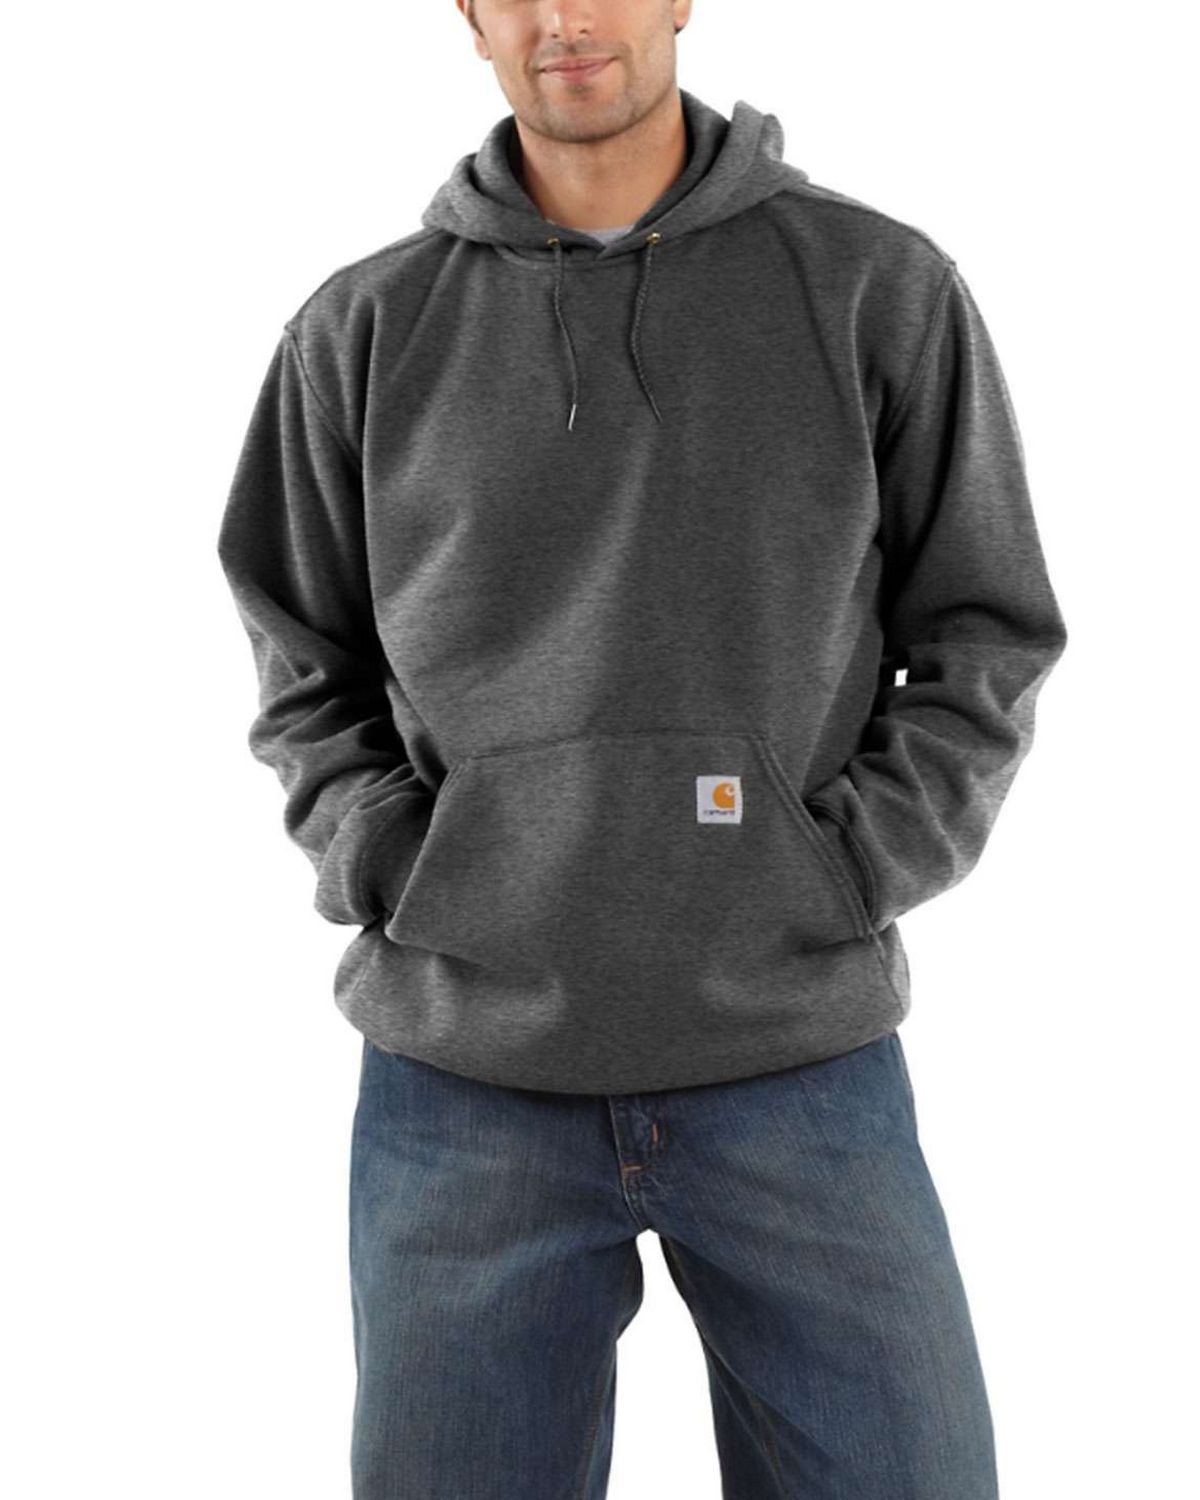 Buy Carhartt K121 Men's Midweight Hooded Sweatshirt